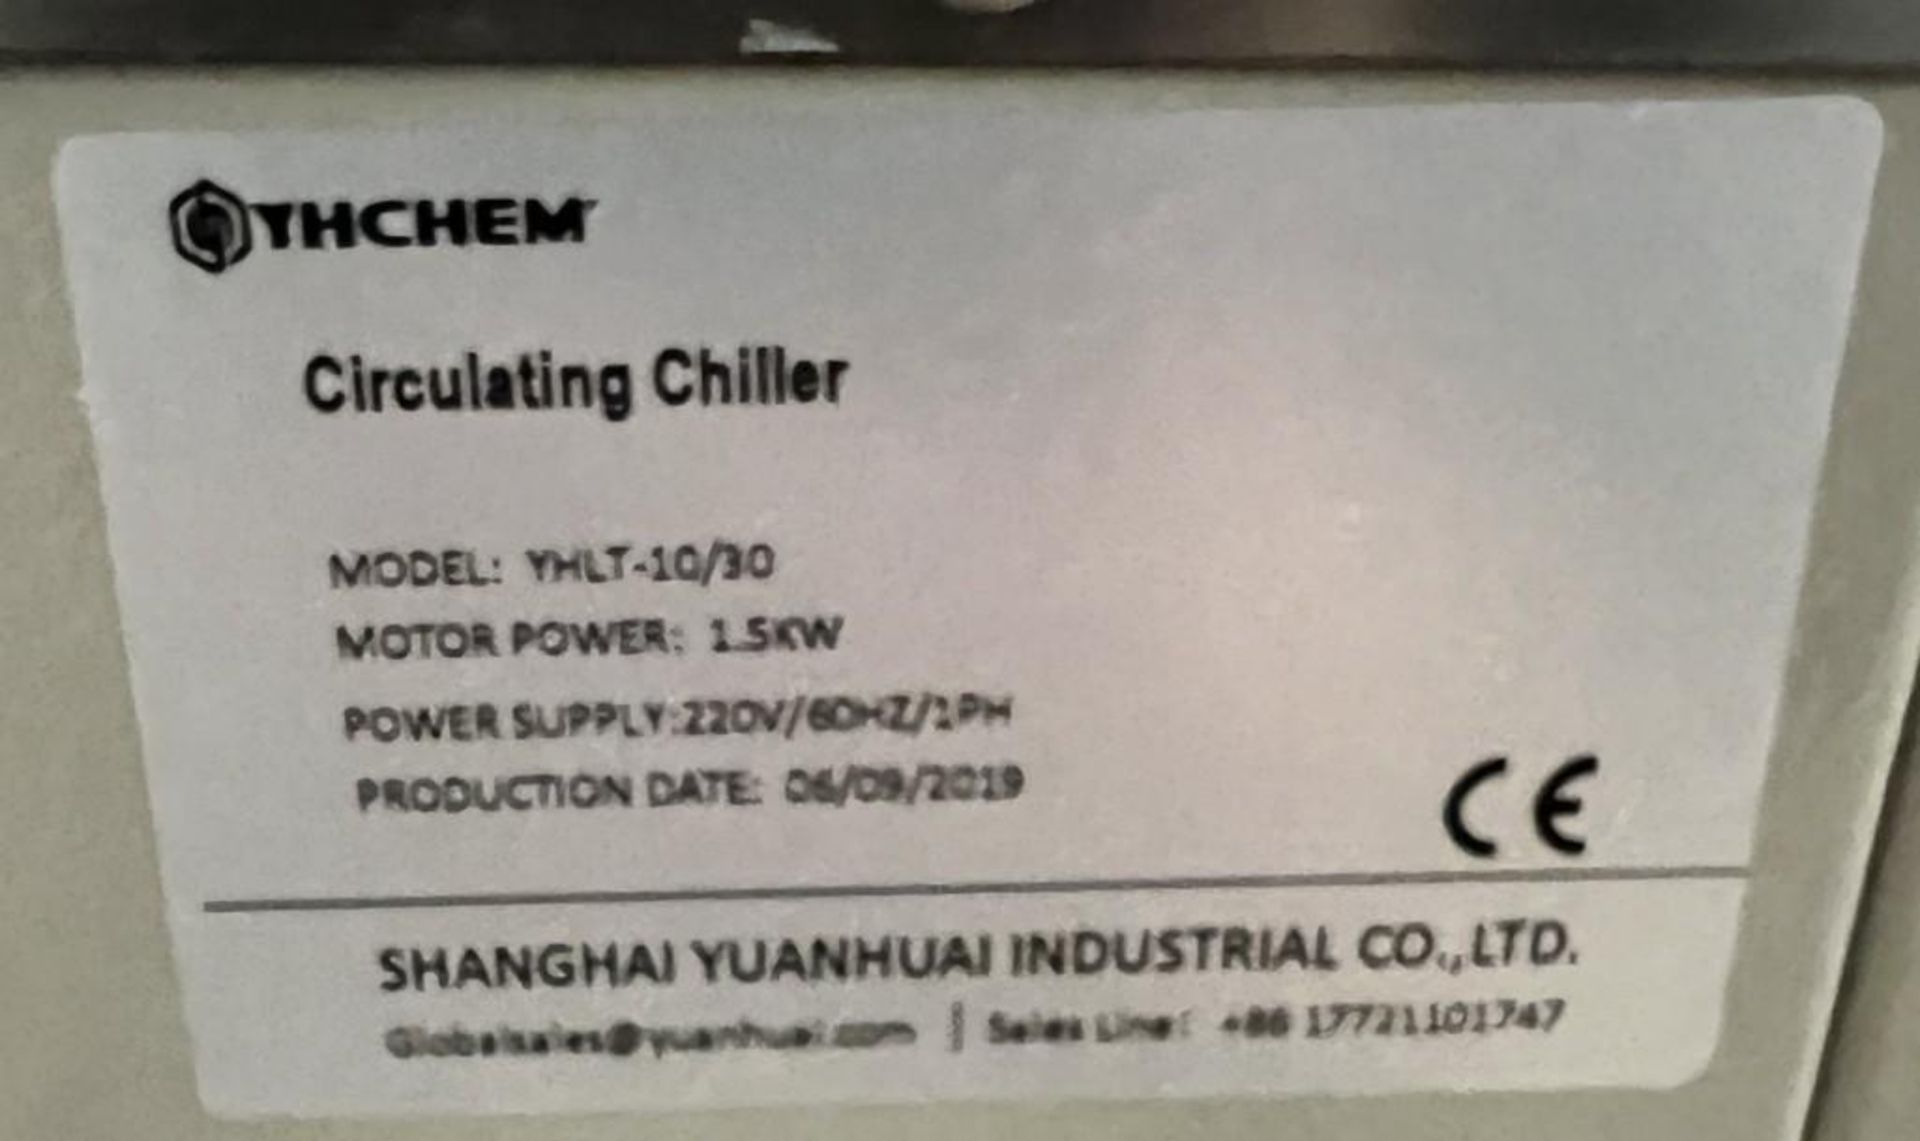 YHCHEM Circulating Chiller, Model YHLT-10/30, Built 06/2019. - Image 6 of 6